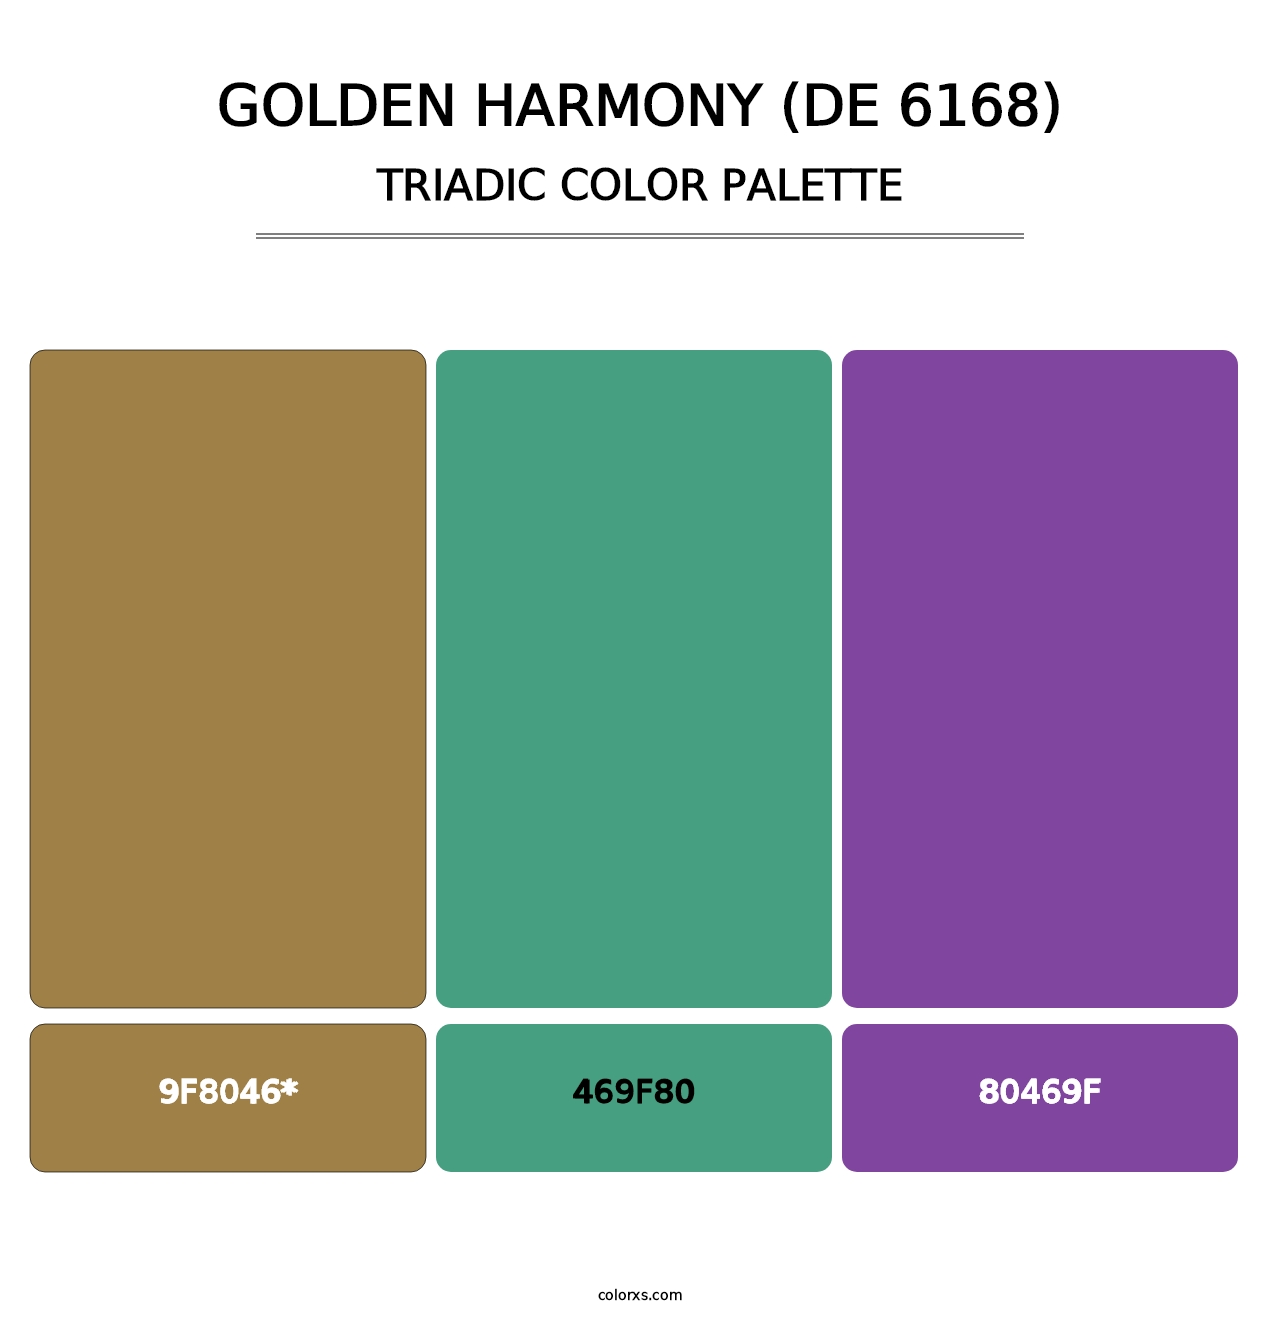 Golden Harmony (DE 6168) - Triadic Color Palette